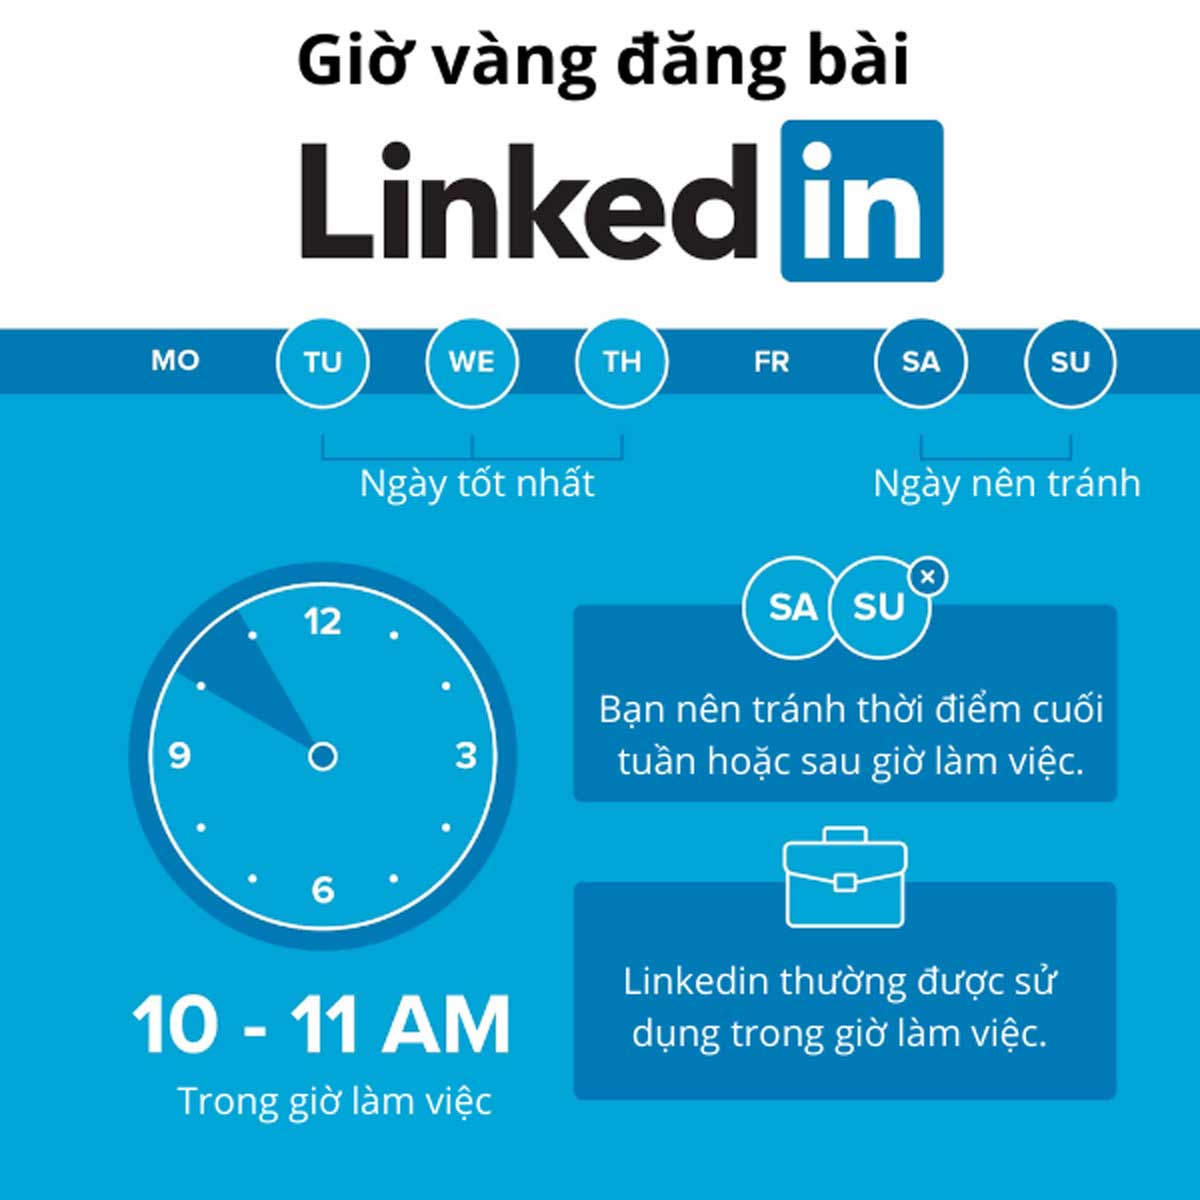 LinkedIn là gì? Cách triển khai Marketing trên LinkedIn hiệu quả nhất hình ảnh 9